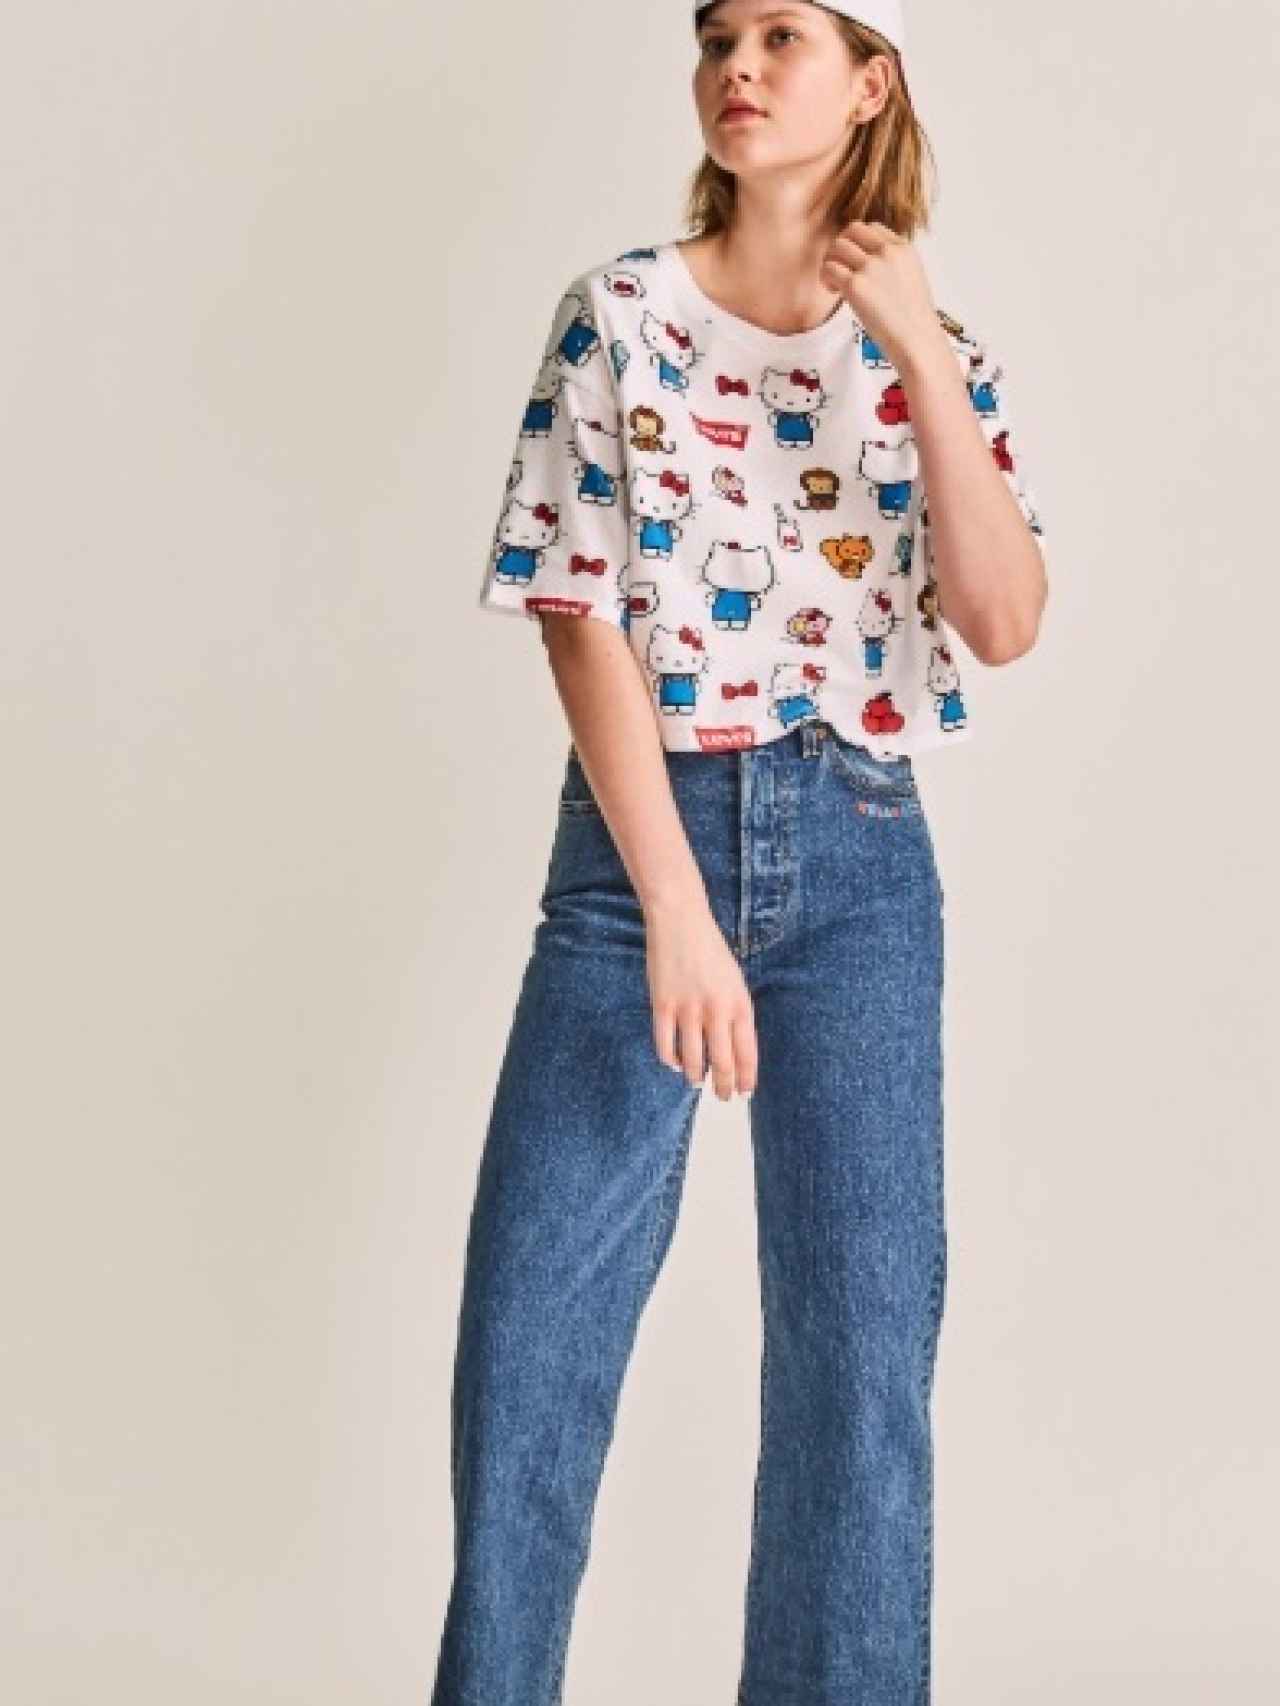 Modelo luciendo una camiseta de Hello Kitty y pantalón de Levis.